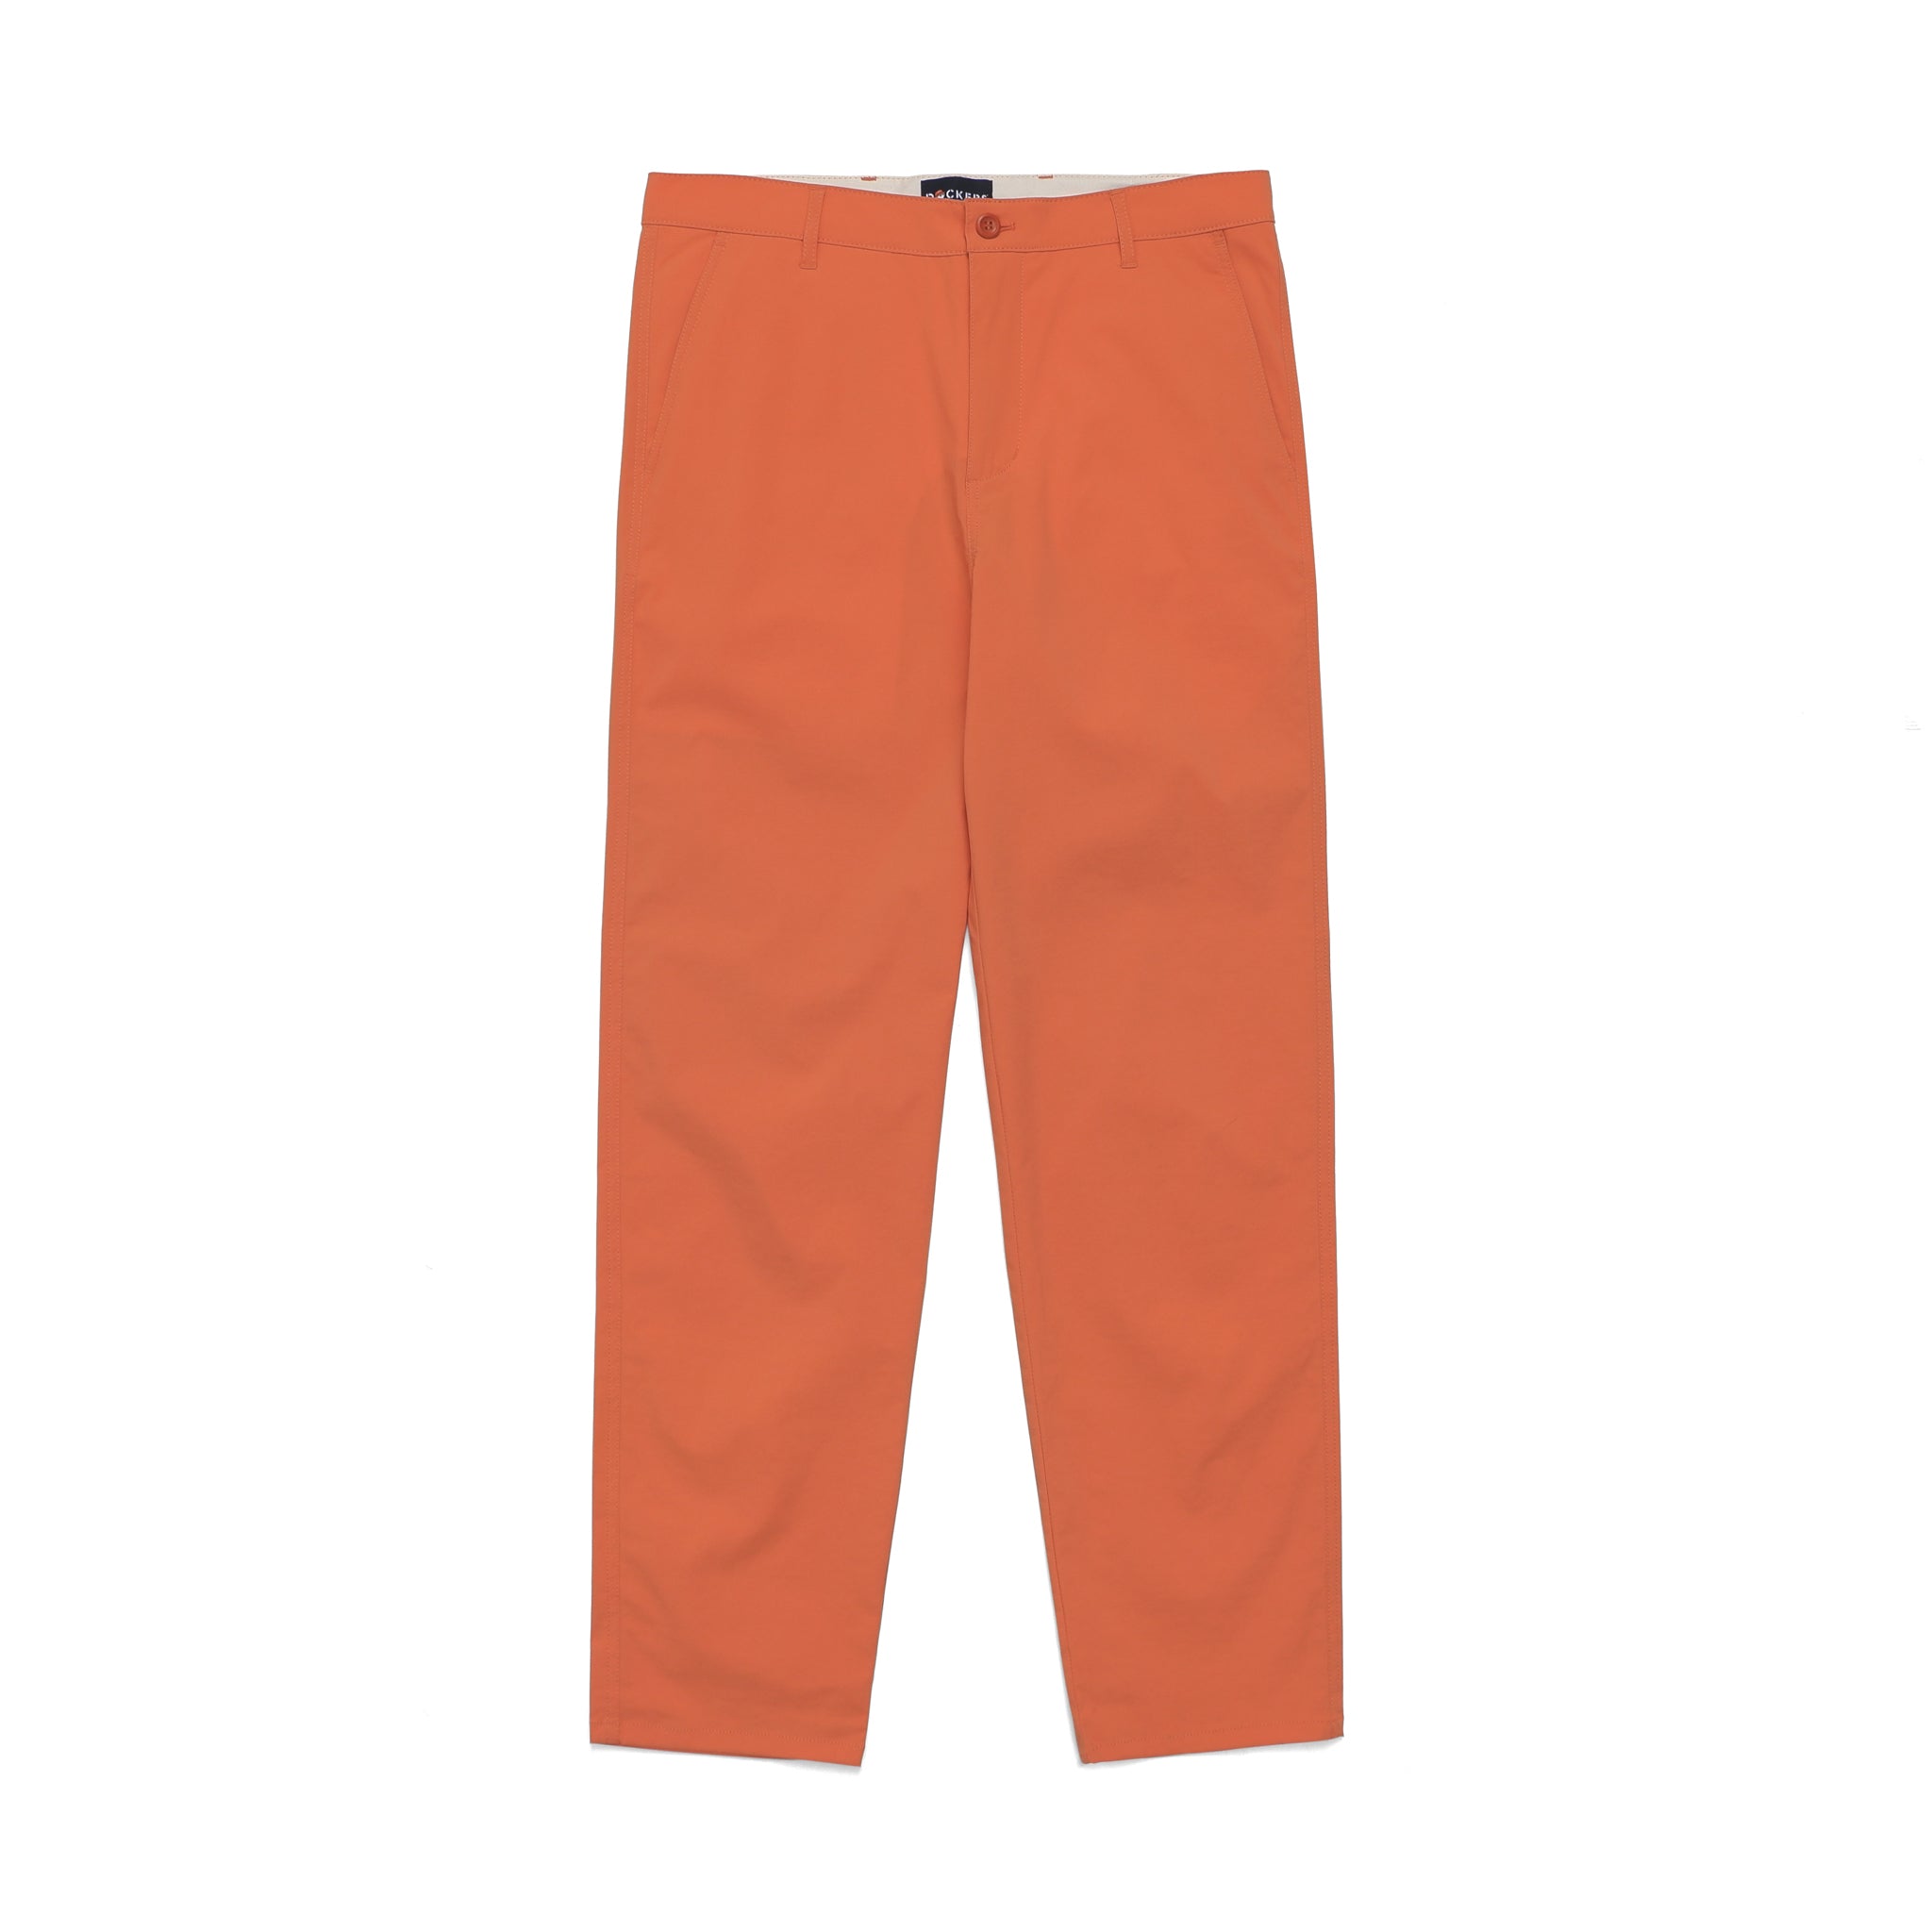 Insect Shield Men's Dockers Jean Cut Pants